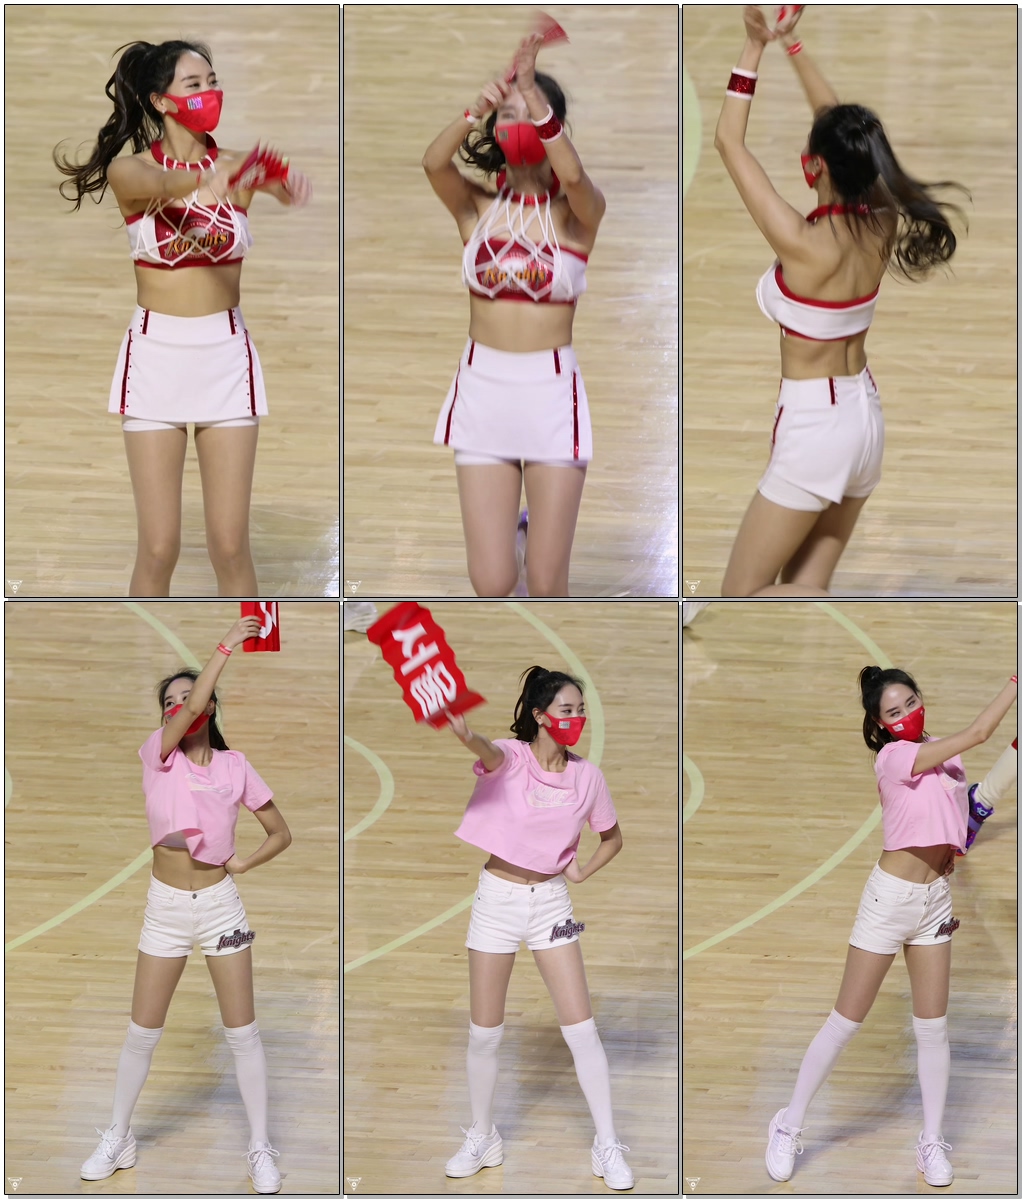 치어리더 박소정 직캠 (cheerleader) - 응원공연 모음 @남자농구(SK나이츠)/201202